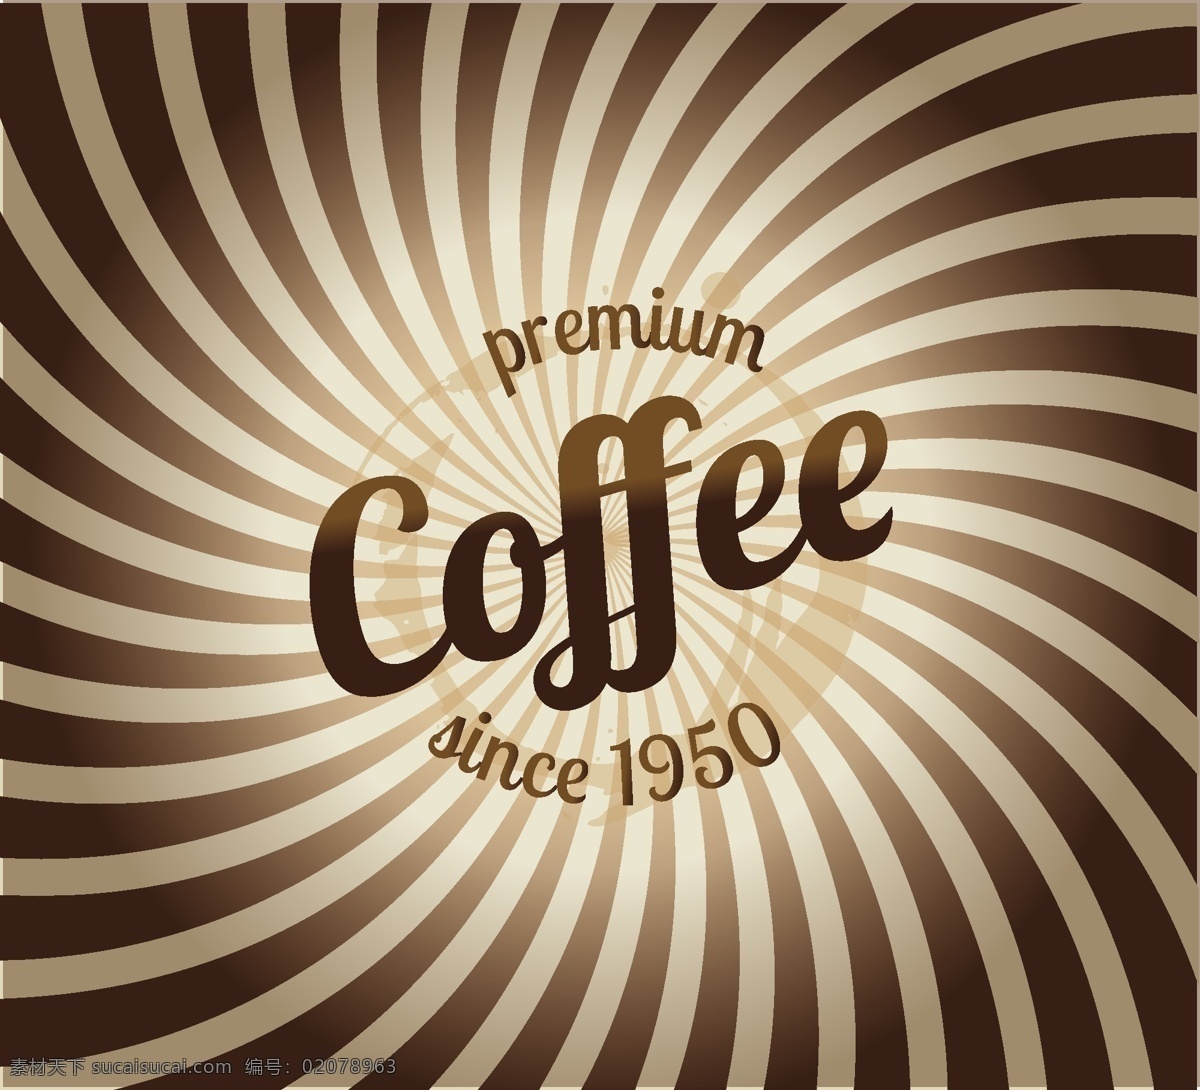 咖啡 咖啡杯 咖啡设计 咖啡手绘 coffee 咖啡图标 咖啡时间 咖啡豆 咖啡馆 咖啡标志 咖啡店 咖啡元素 咖啡店图标 logo 咖啡商标 餐饮美食 生活百科